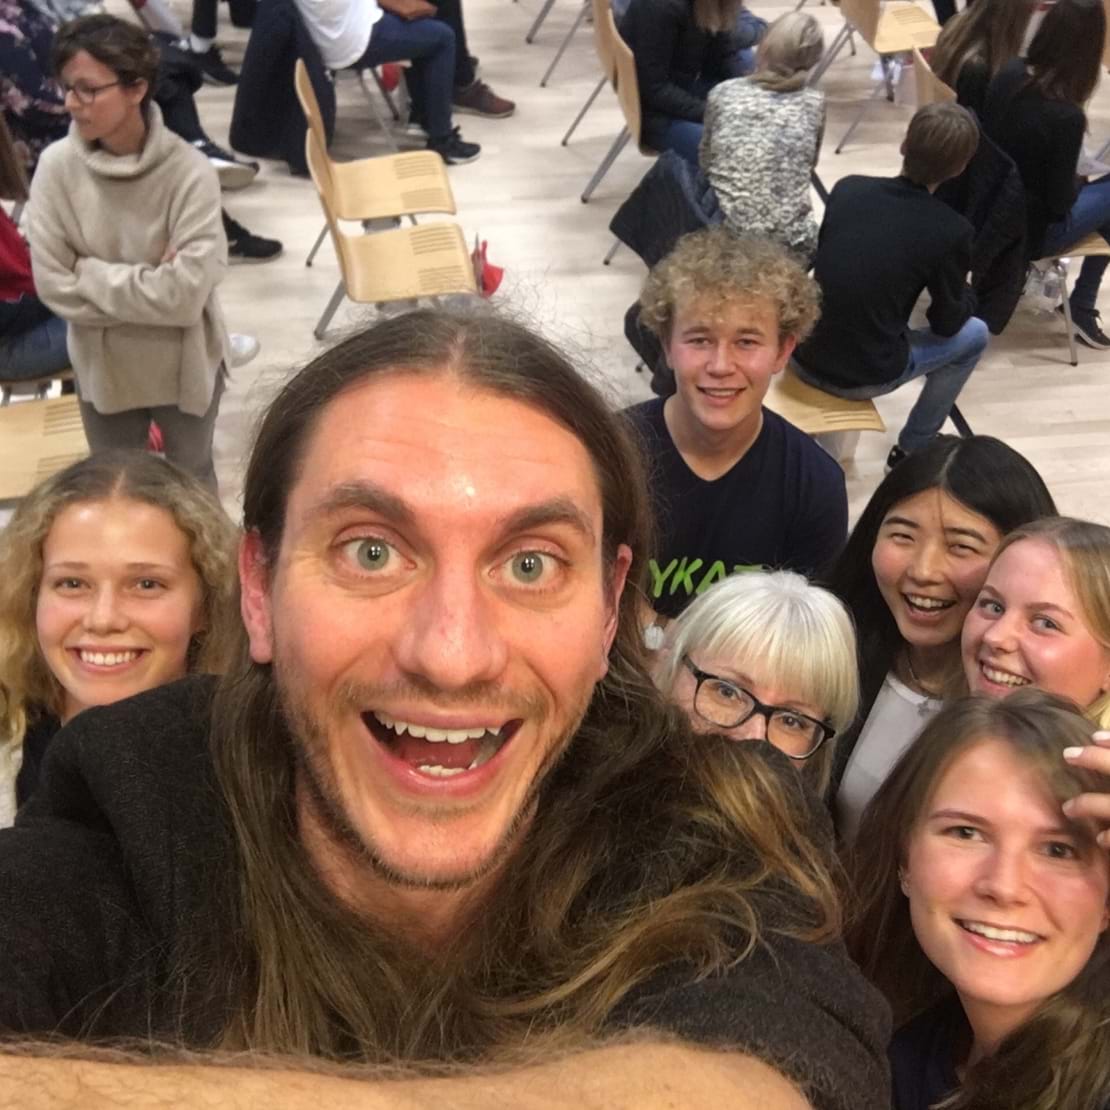 Lærer og elever tager selfie sammen